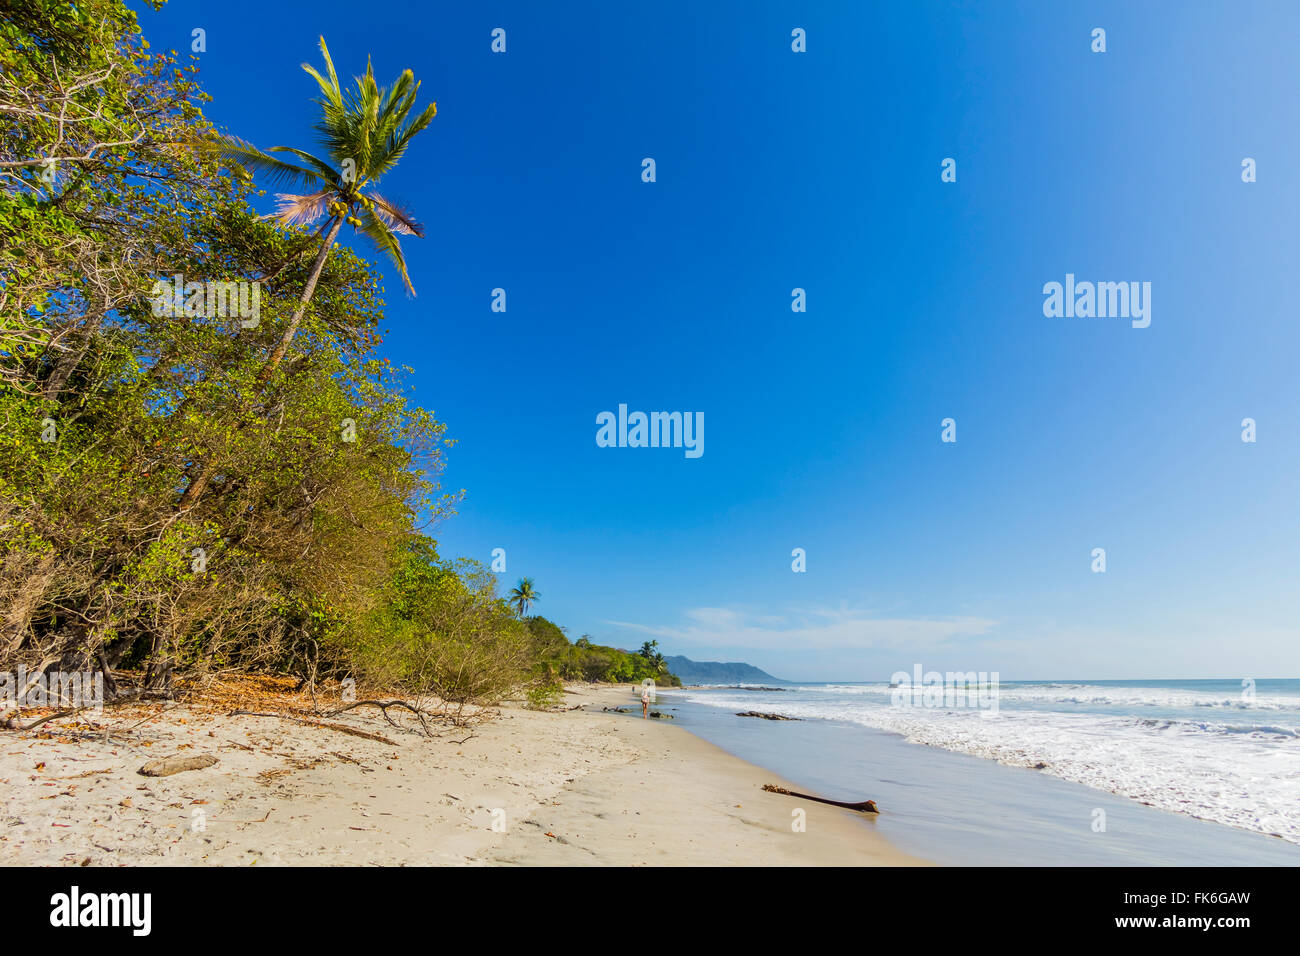 De grands palmiers et de jungle derrière la plage au sud de la Péninsule de Nicoya Surf resort, Santa Teresa, Puntarenas, Costa Rica Banque D'Images